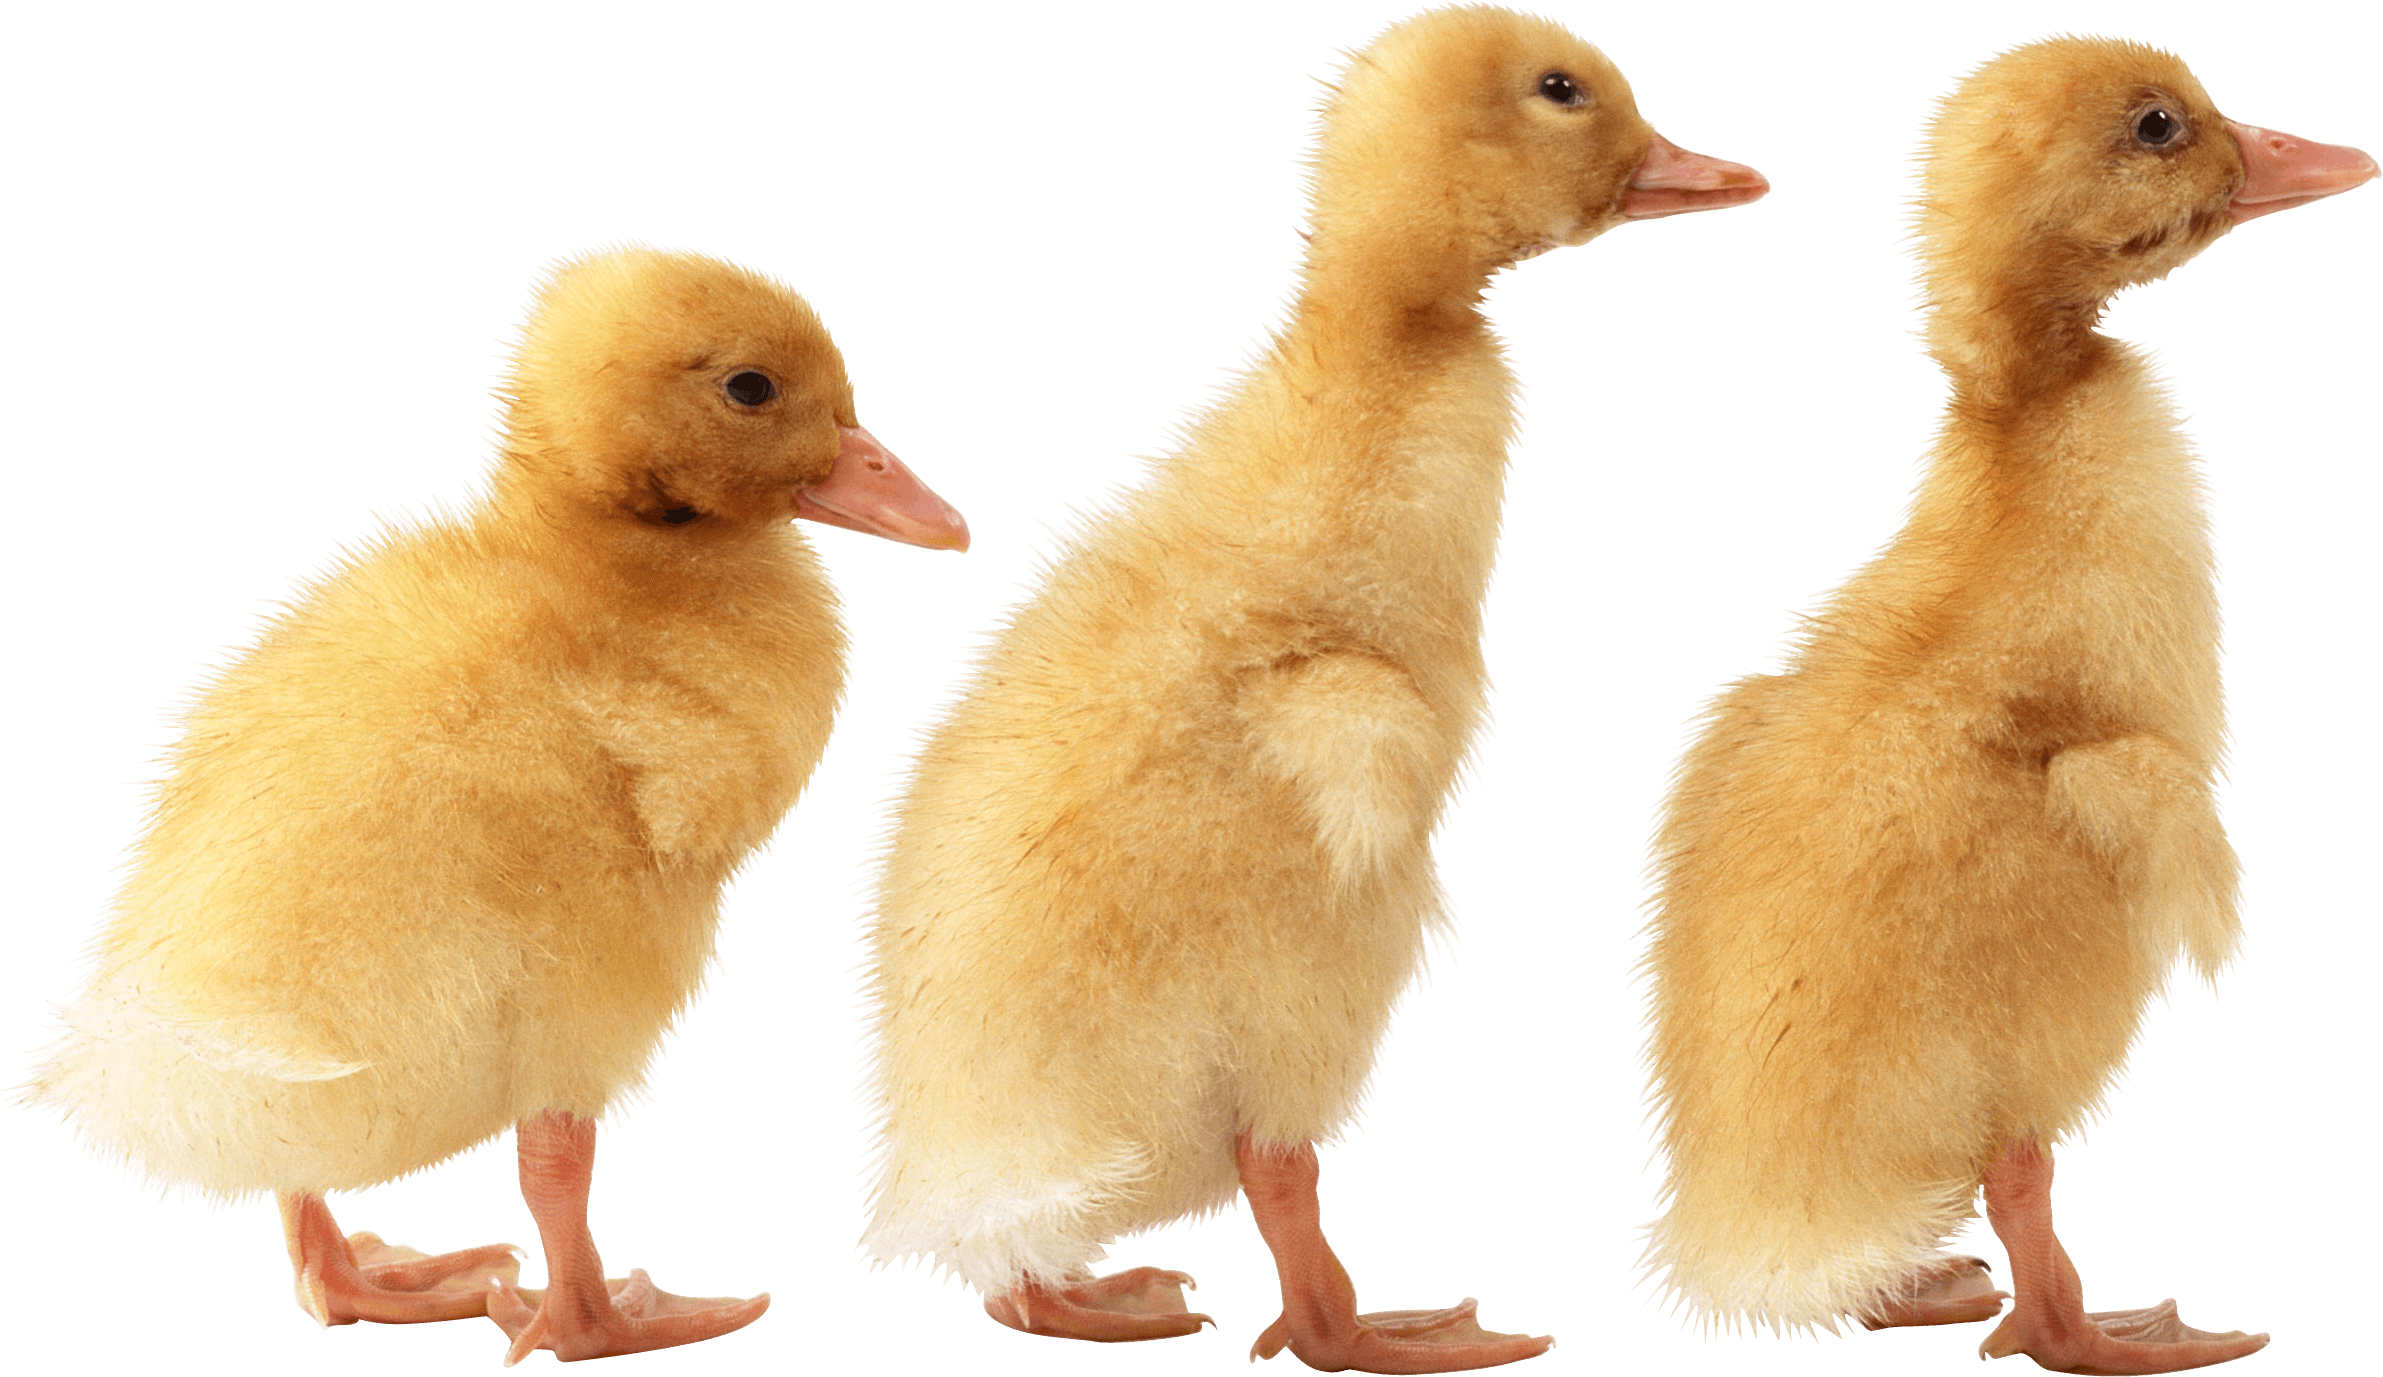 3 little cute ducklings